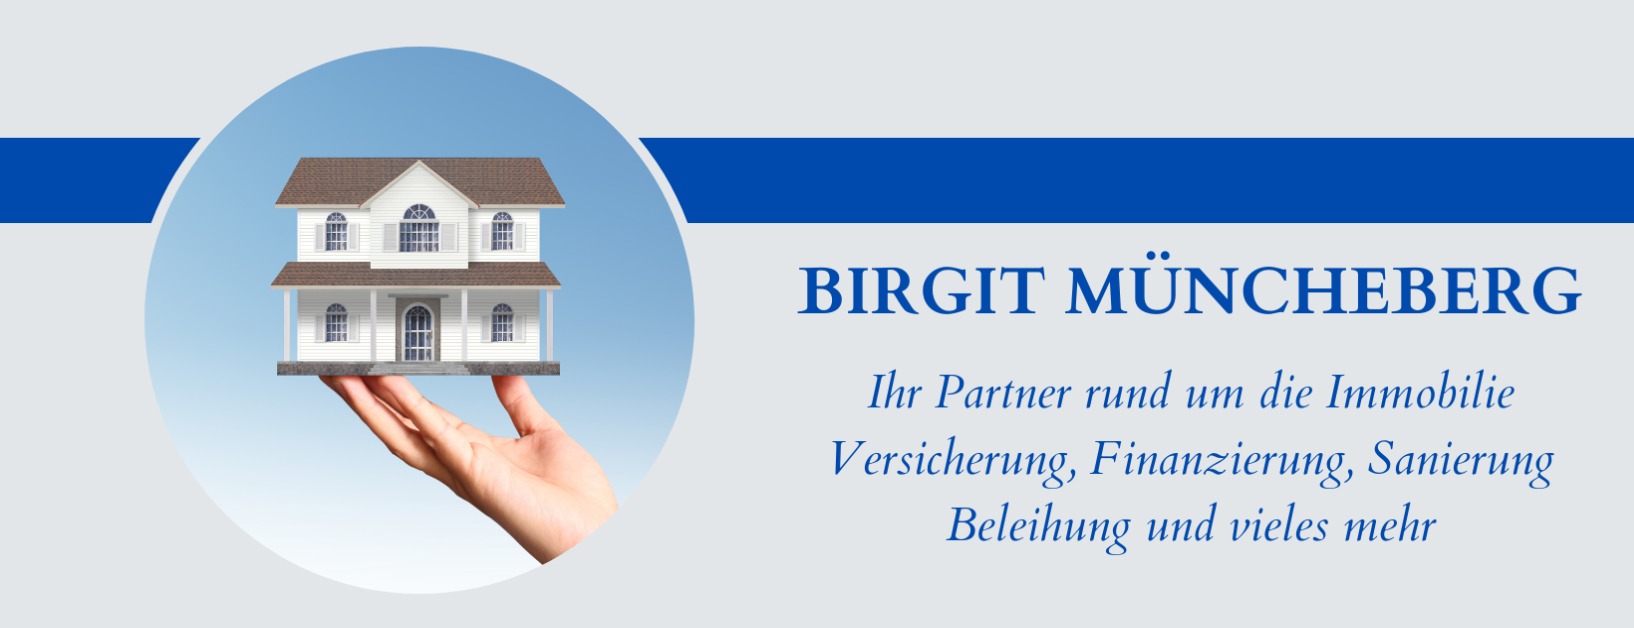 Allianz Versicherung Birgit Müncheberg Hoppegarten - Haus auf Hand